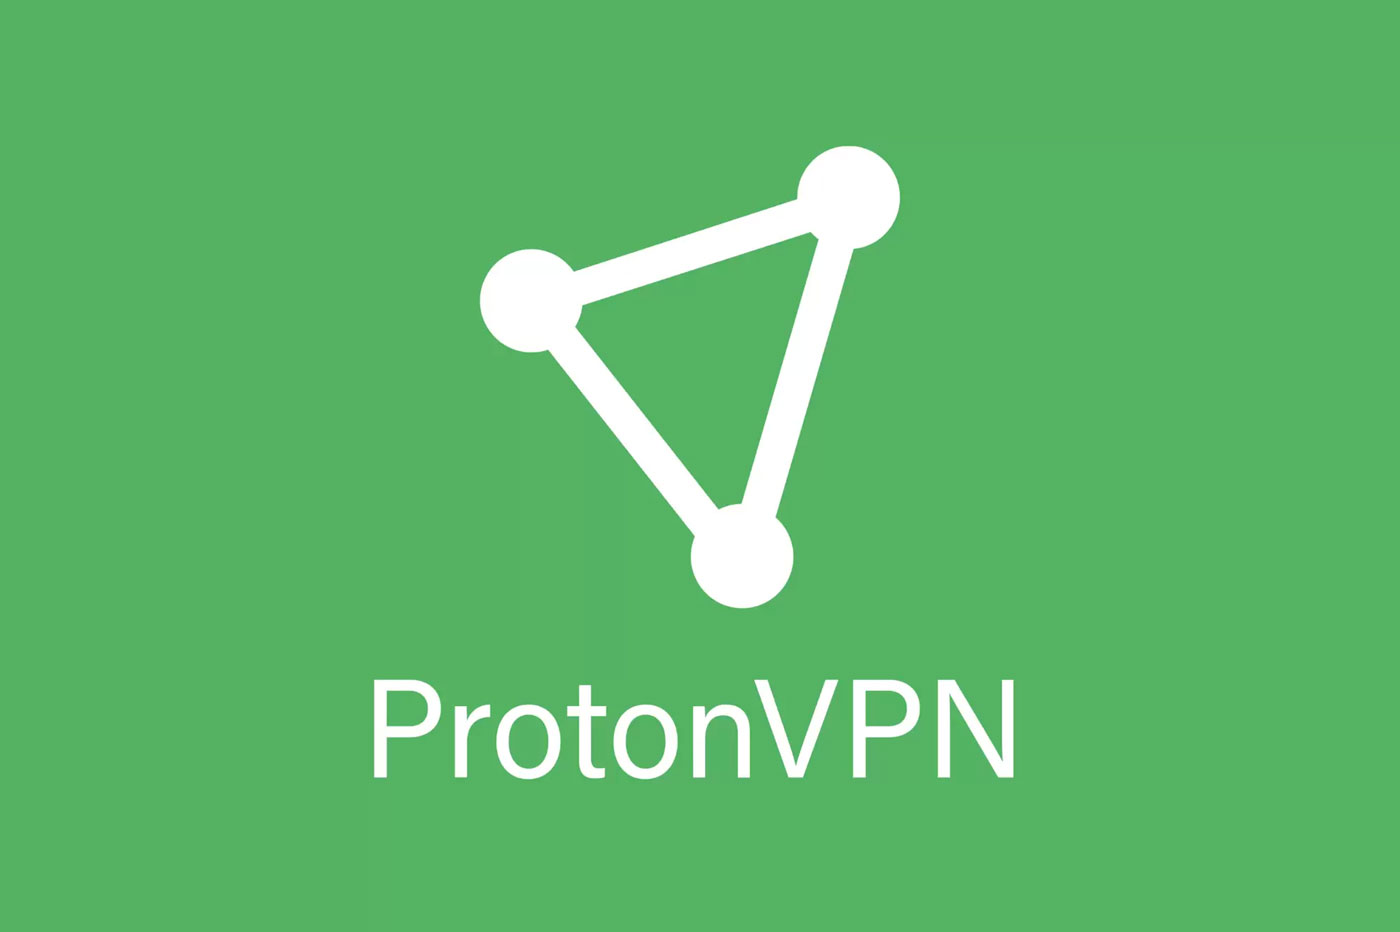 ProtonVPN - 全体で XNUMX 番目に速く、アップロード速度が最速